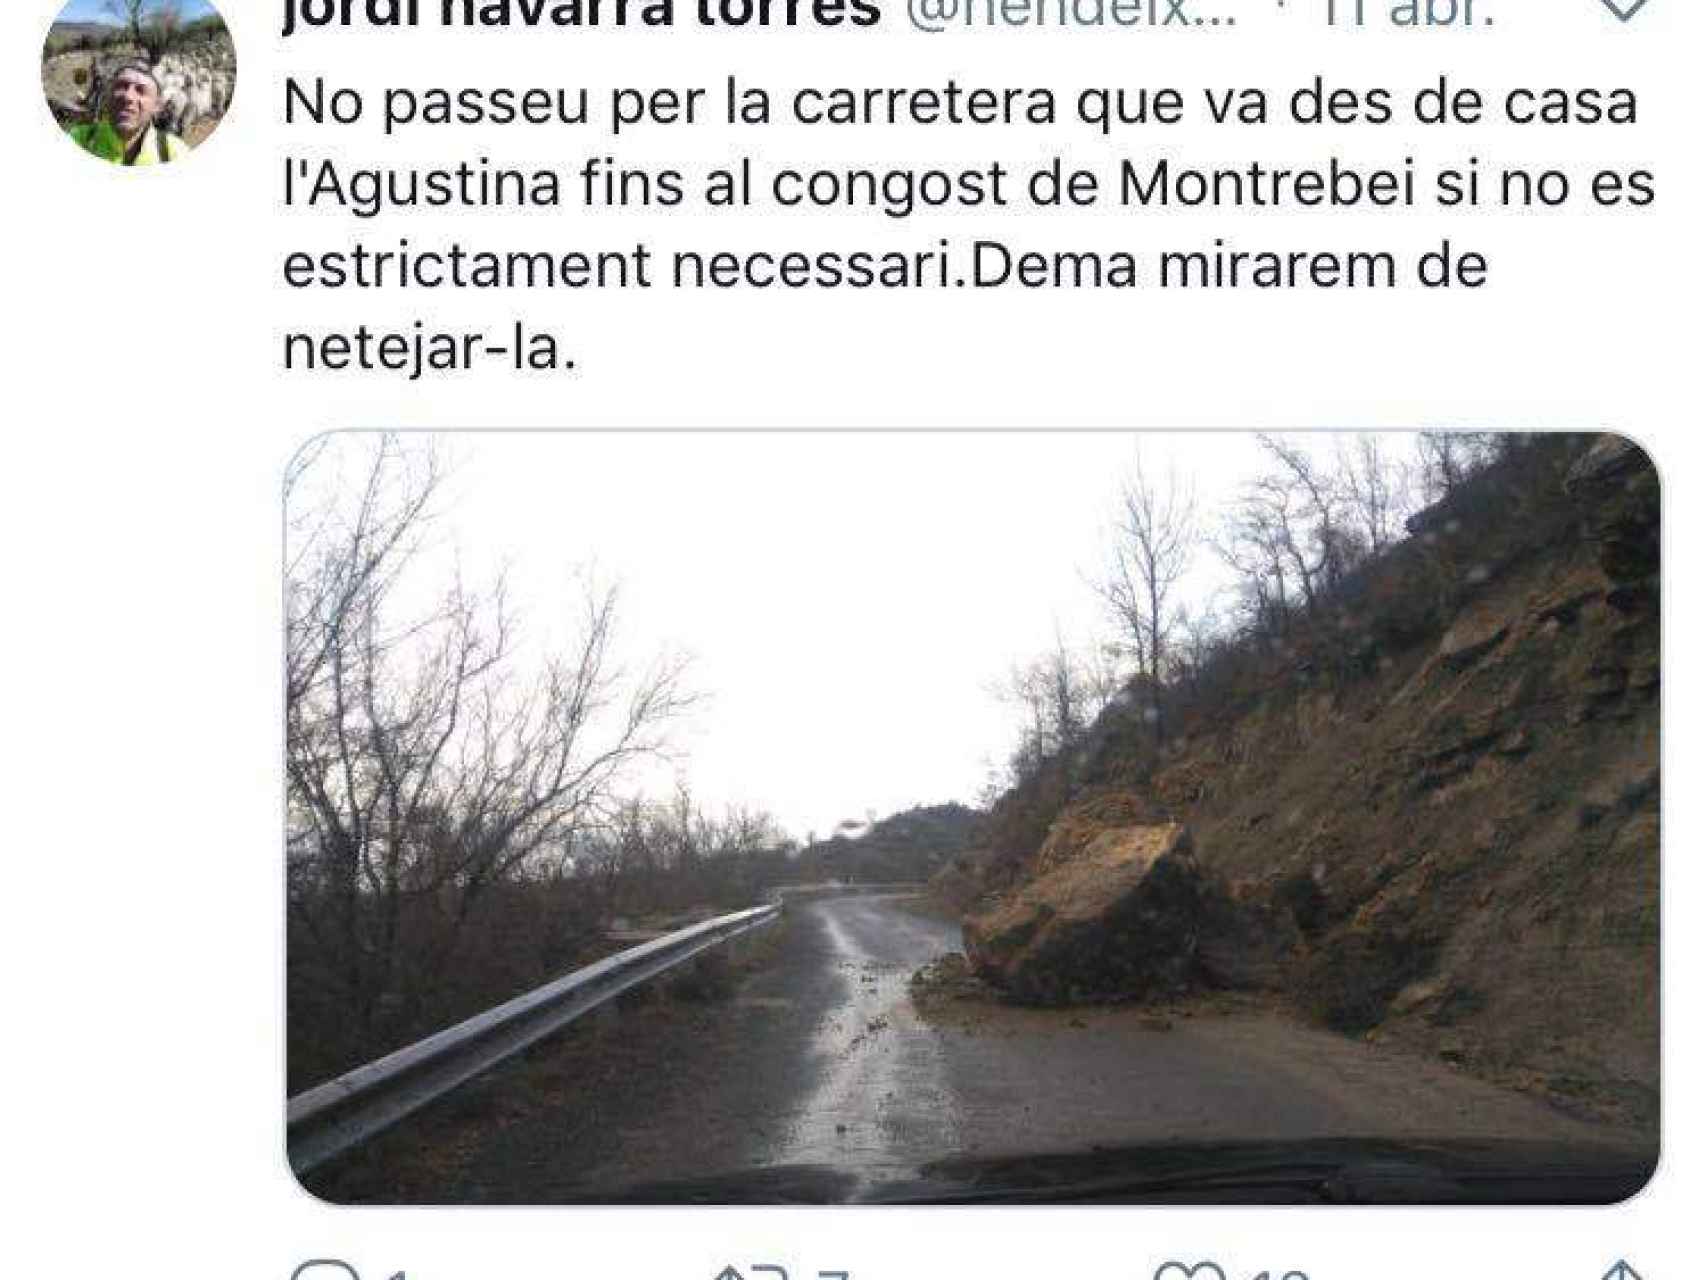 Tweet de Jordi Navarra, alcalde de Sant Esteve de la Sarga alertando del peligro de la carretera